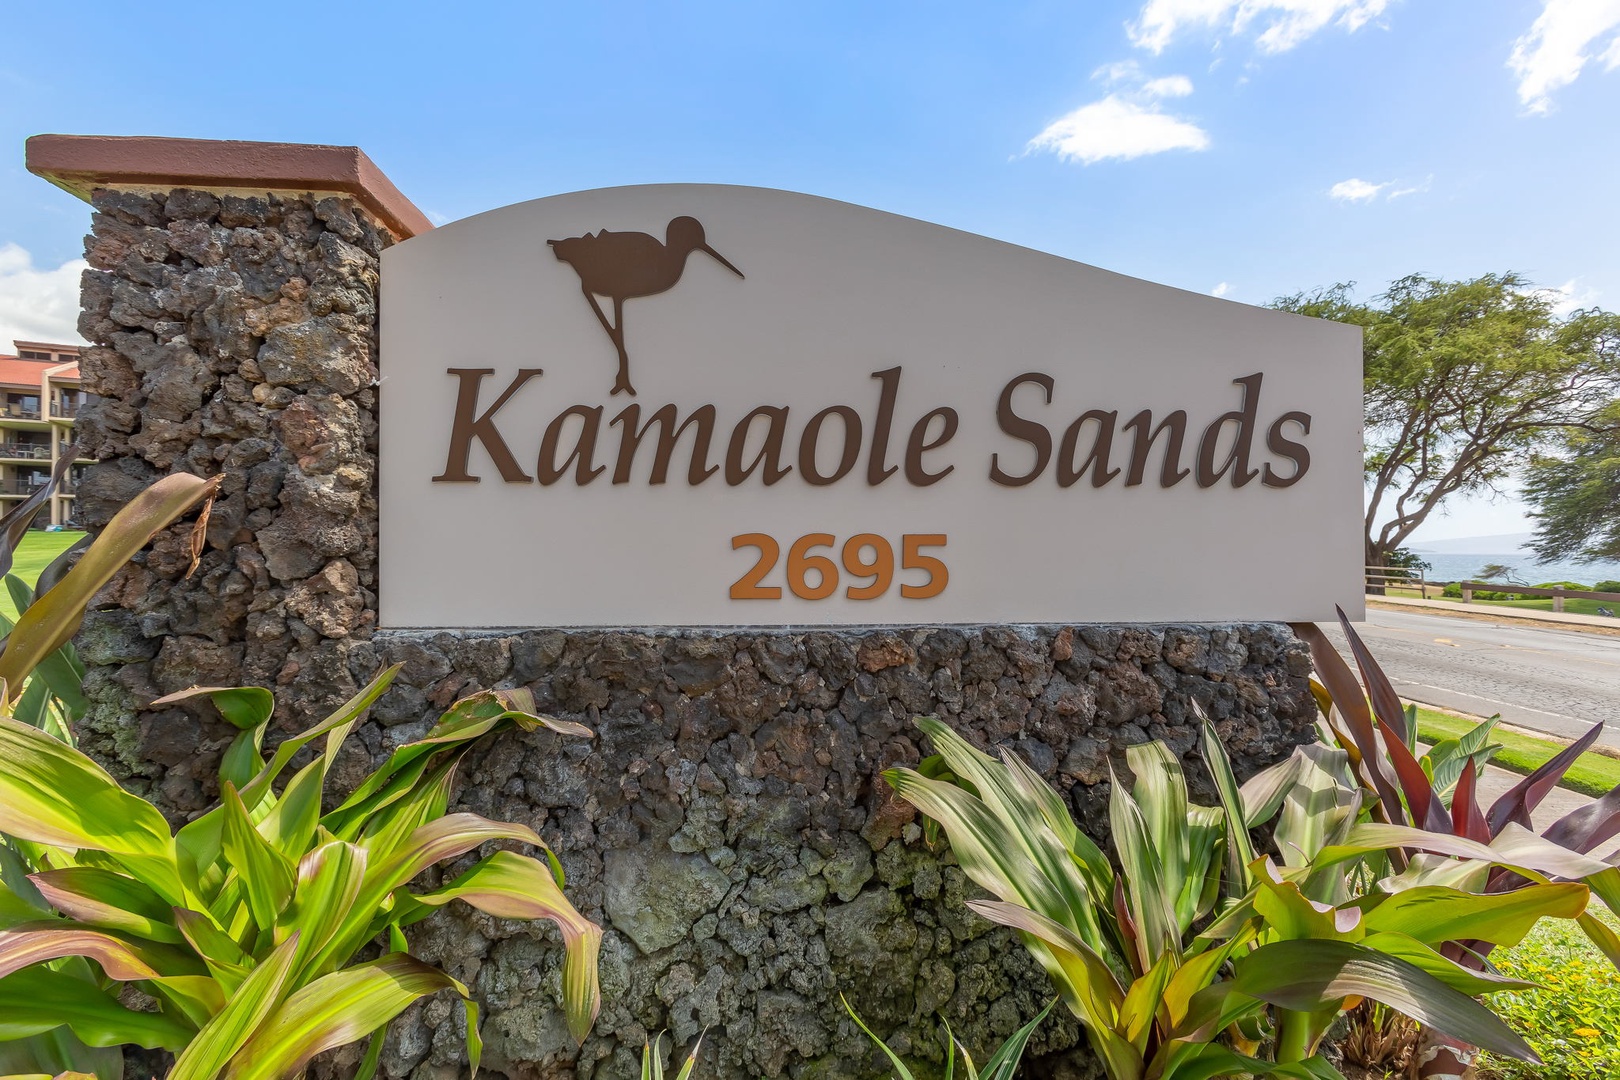 Kamaole Sands